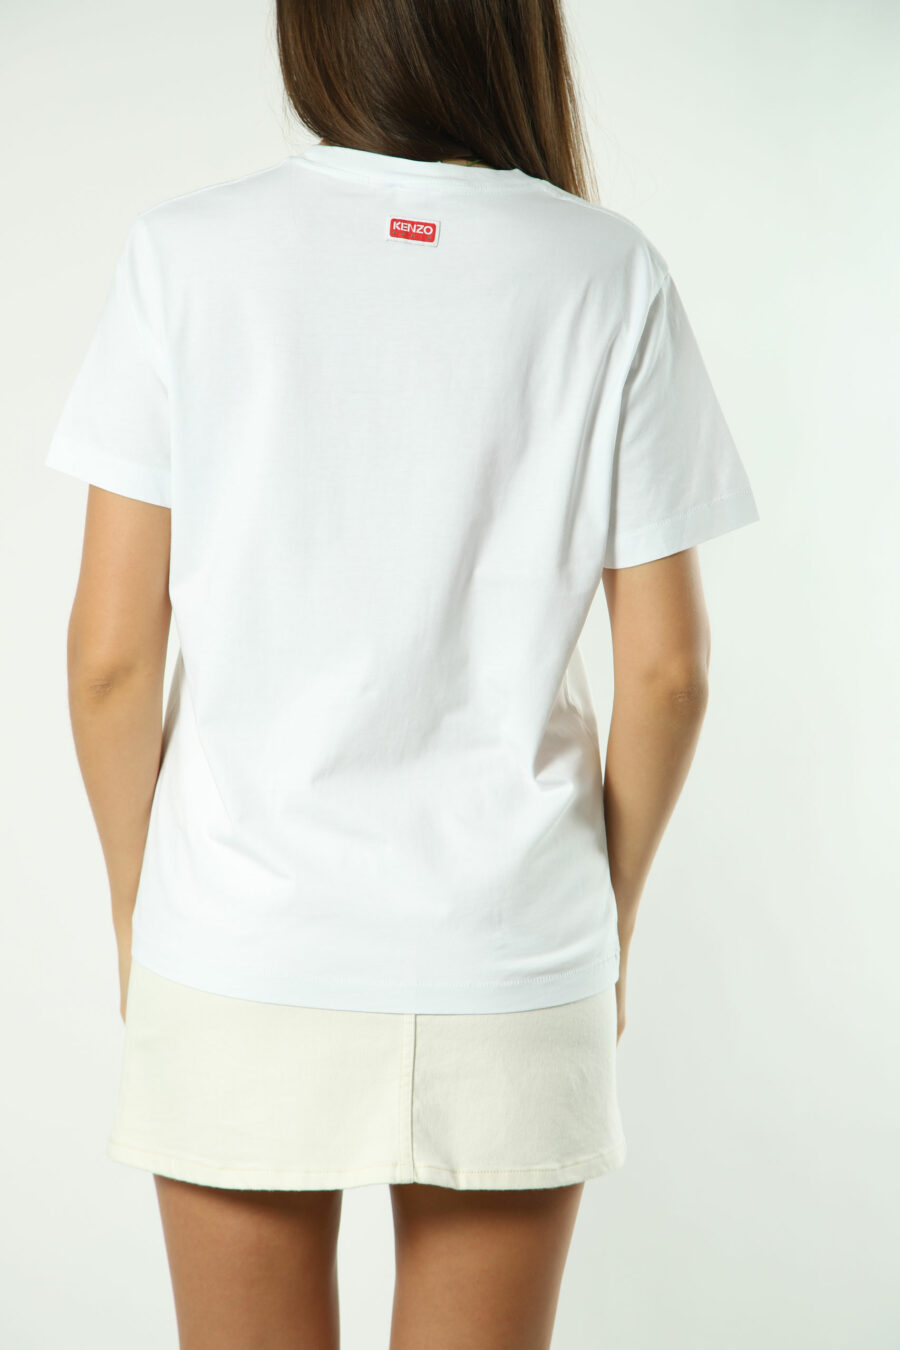 Camiseta blanca con maxilogo flor naranja - Photos 1383